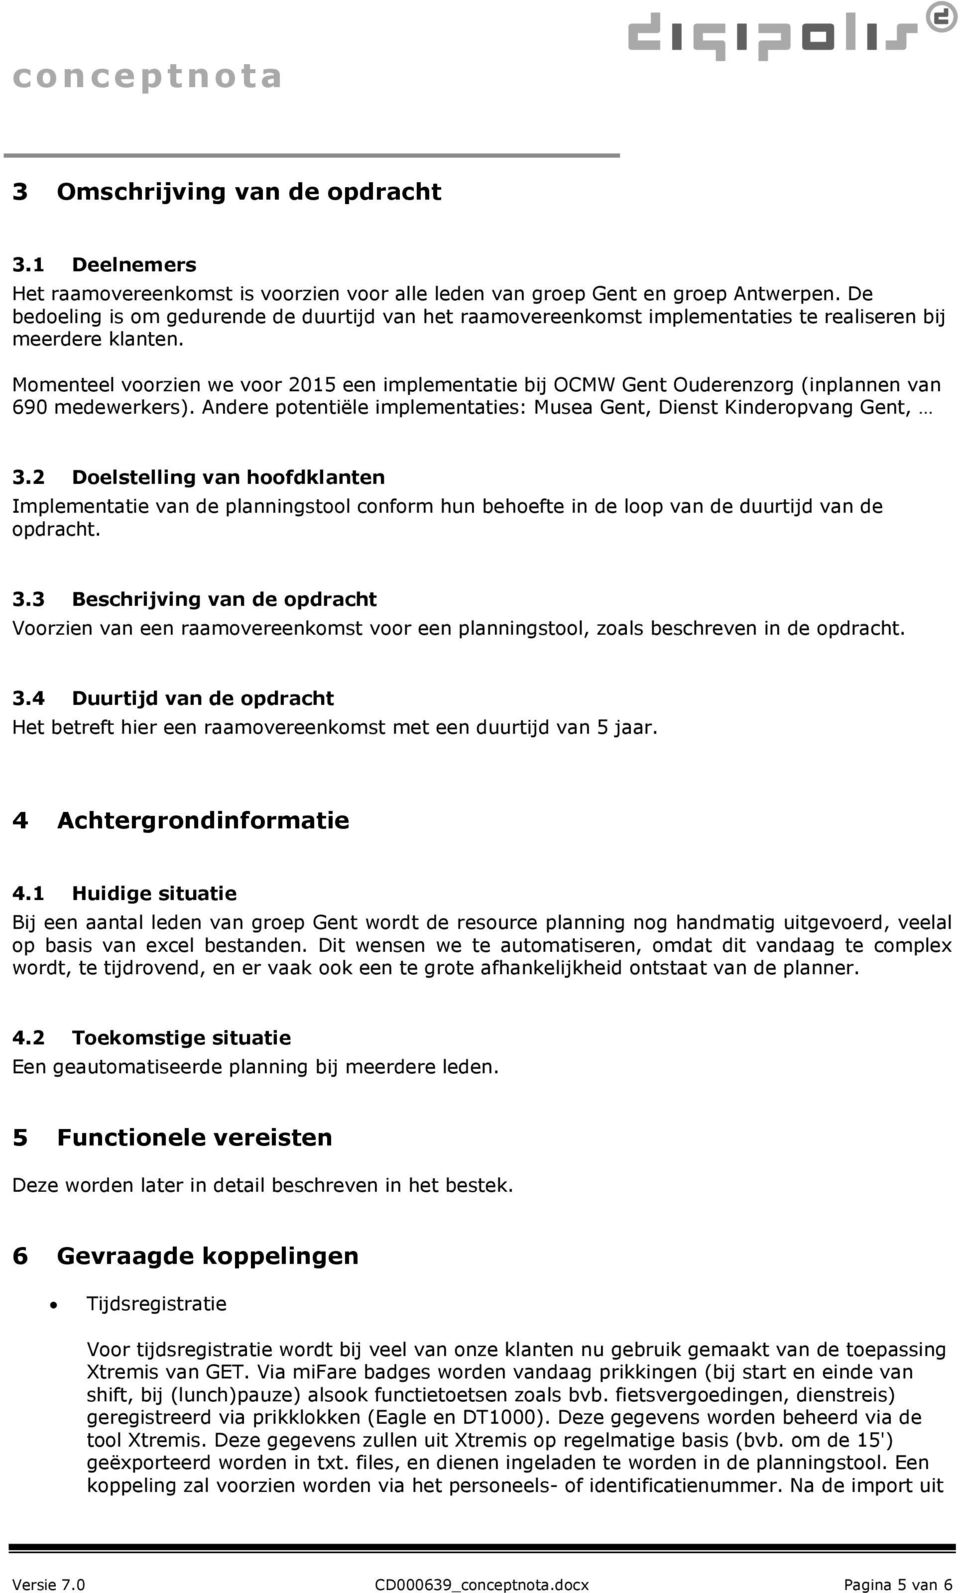 Mmenteel vrzien we vr 2015 een implementatie bij OCMW Gent Ouderenzrg (inplannen van 690 medewerkers). Andere ptentiële implementaties: Musea Gent, Dienst Kinderpvang Gent, 3.